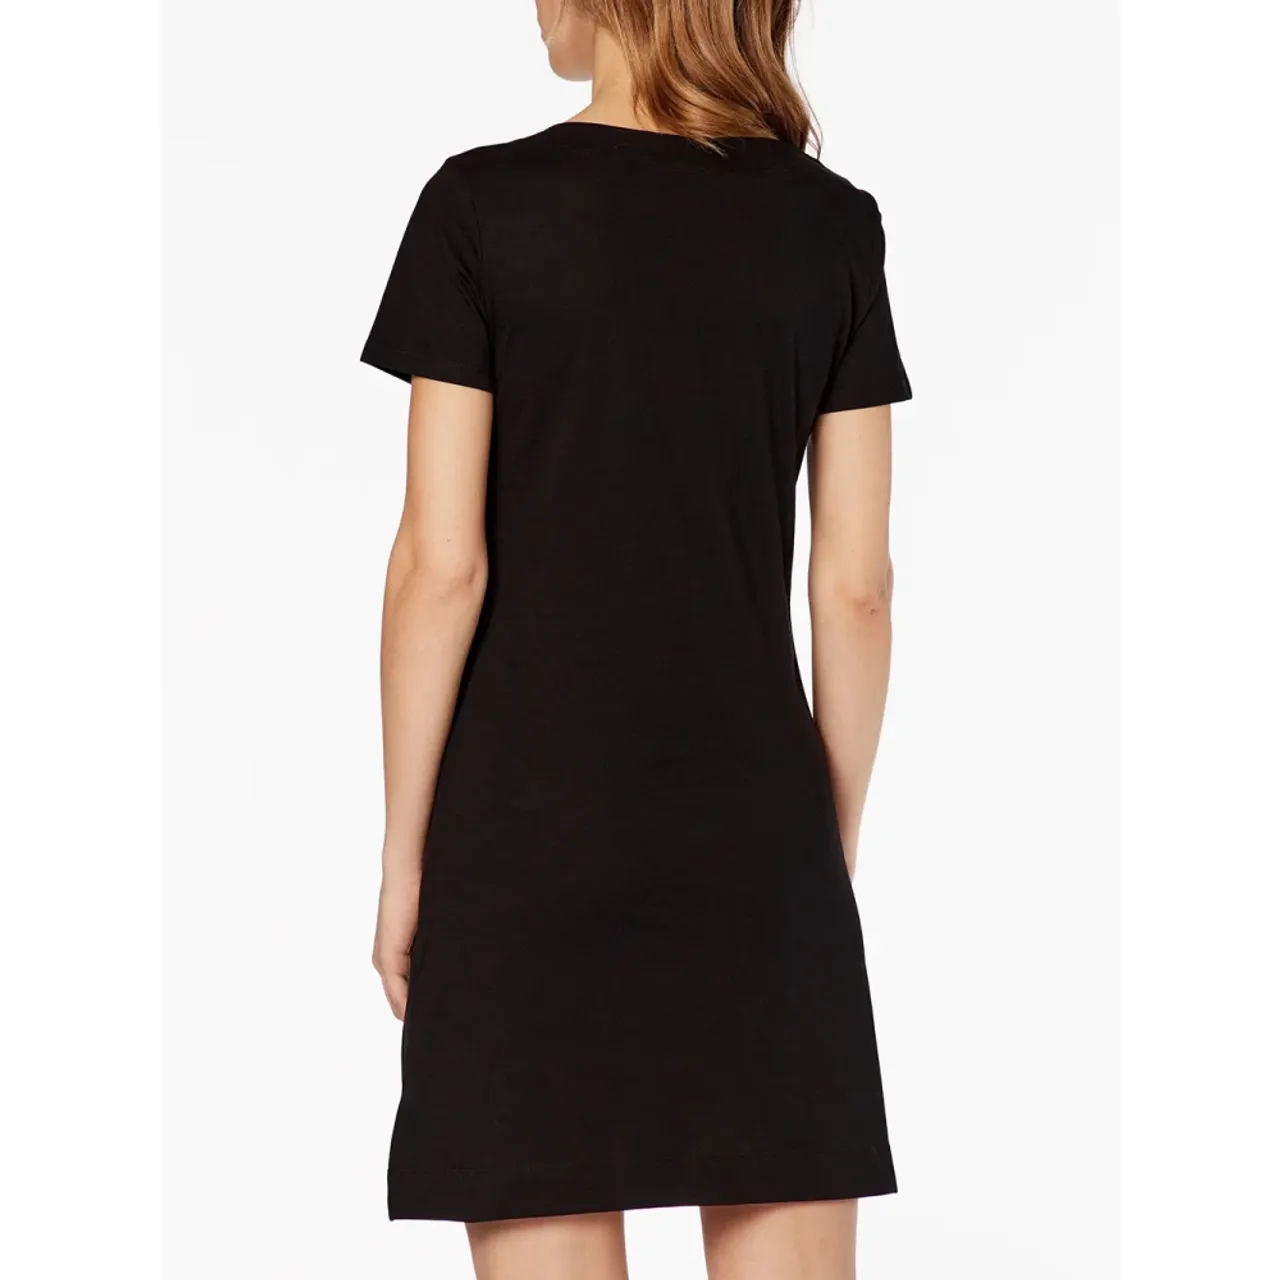 Schwarzes T-Shirt Kleid - Lässiges Style-Update Love Moschino